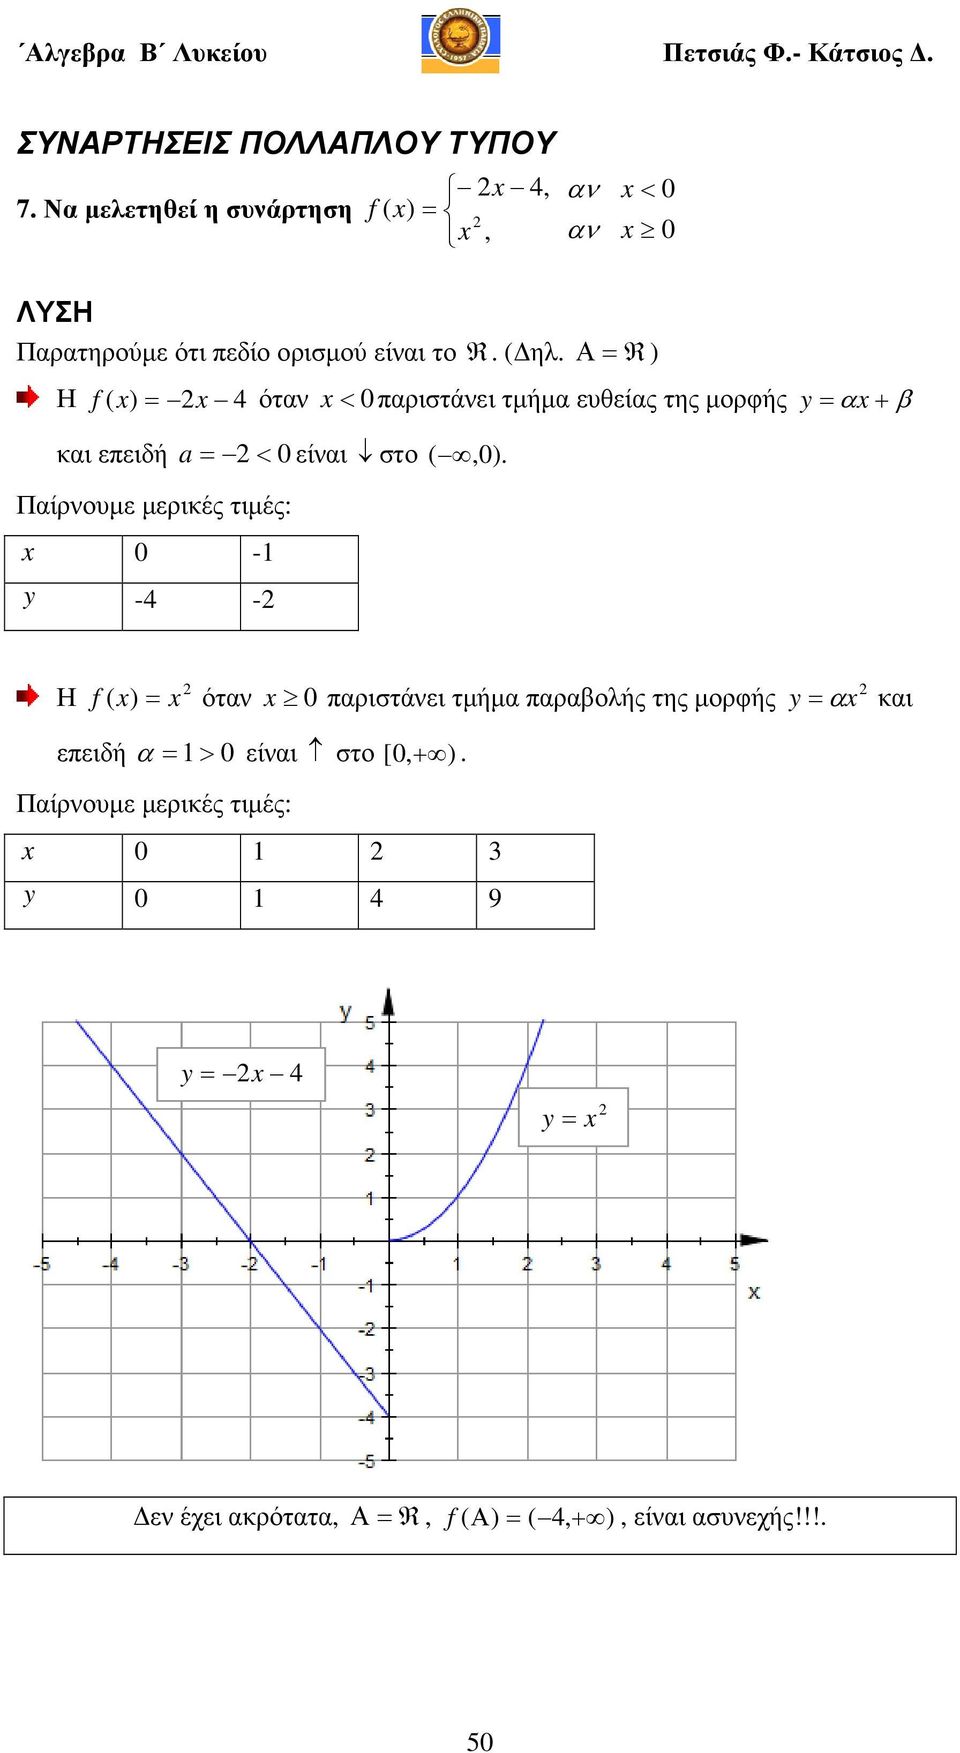 Α R ) Η f ) 4 όταν < παριστάνει τµήµα ευθείας της µορφής y α + β και επειδή a< είναι στο,).